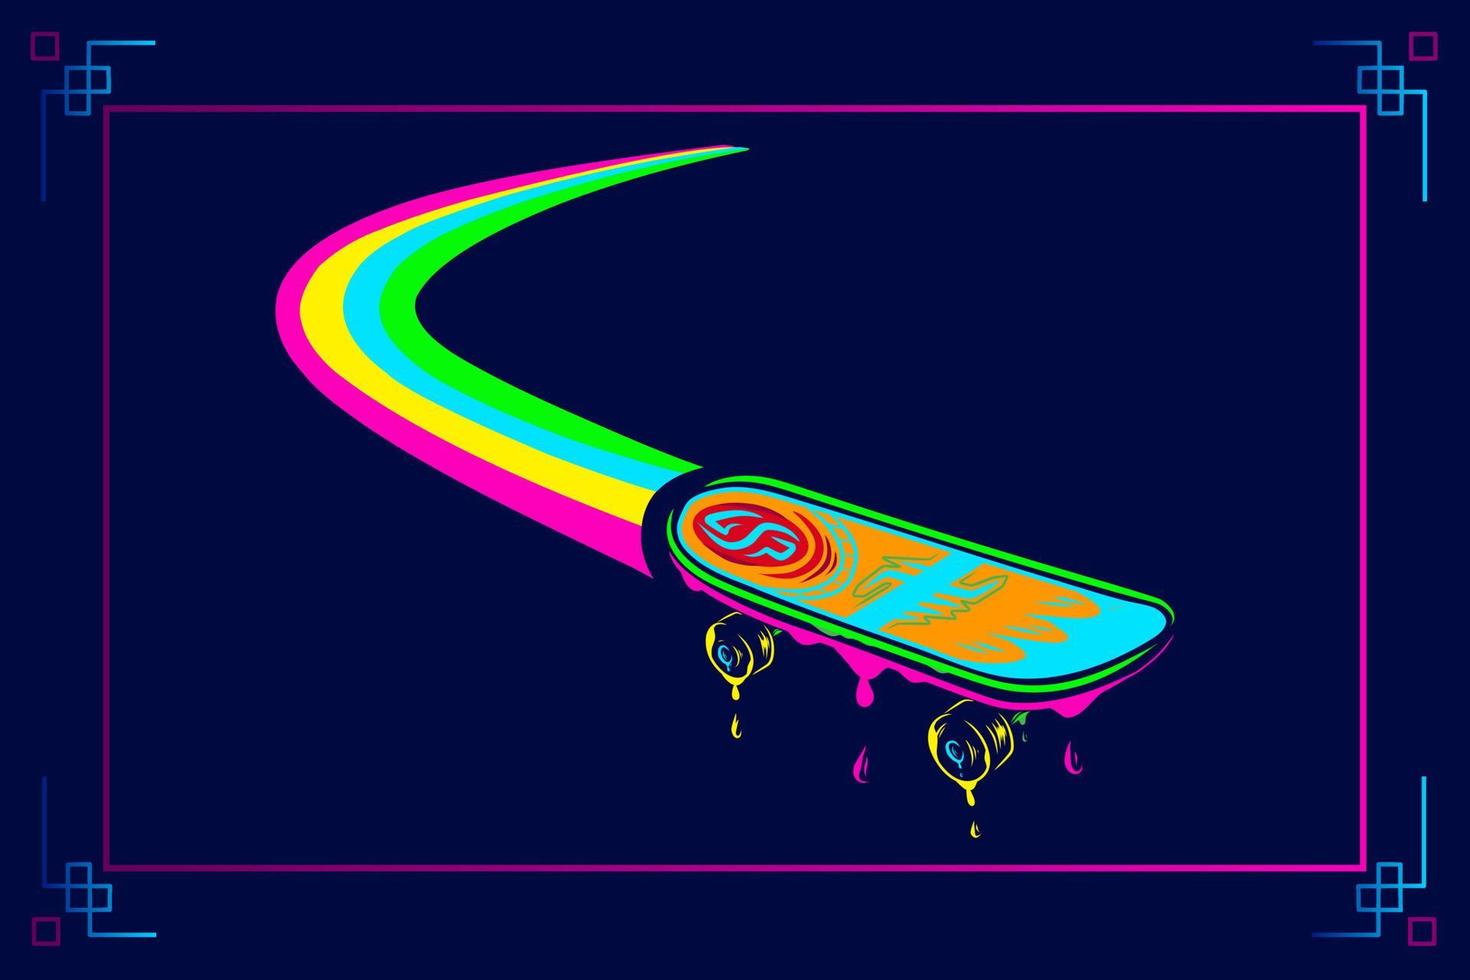 skateboard vektor silhuett linje popkonst potrait logo färgglada design med mörk bakgrund. abstrakt vektorillustration. isolerade svart bakgrund för t-shirt, affisch, kläder.